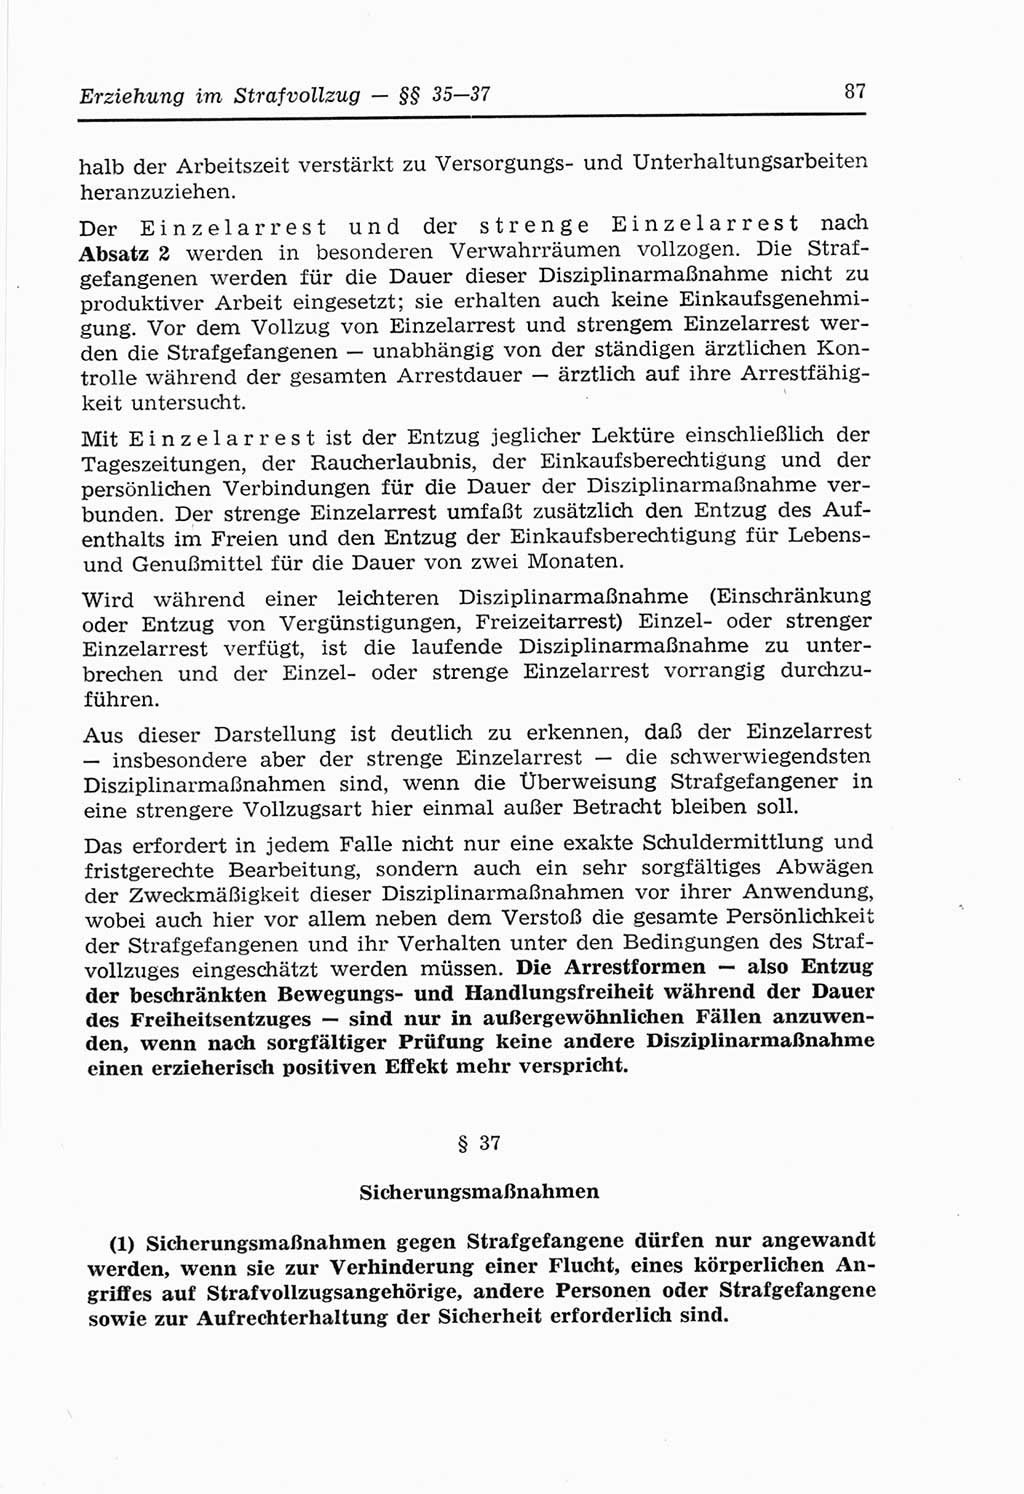 Strafvollzugs- und Wiedereingliederungsgesetz (SVWG) der Deutschen Demokratischen Republik (DDR) 1968, Seite 87 (SVWG DDR 1968, S. 87)